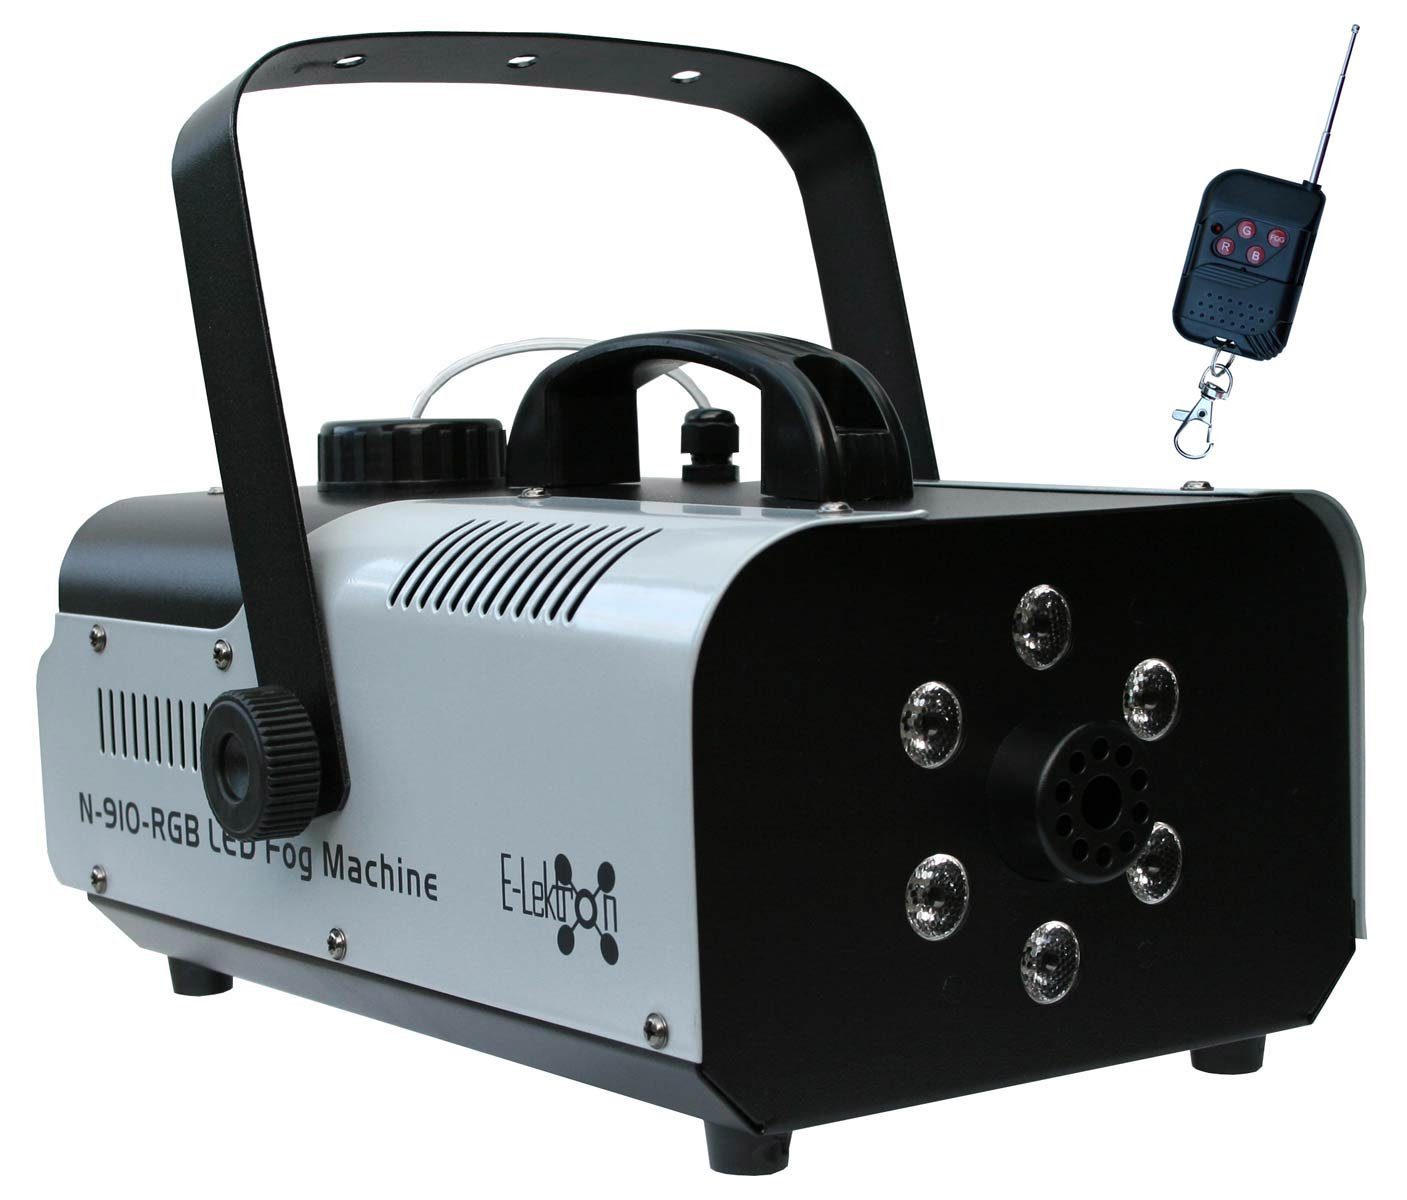 E-Lektron LED Discolicht N-910-RGB Nebelmaschine, integriert, LED Beleuchtung RGB, fest Fernbedienung, Nebels des